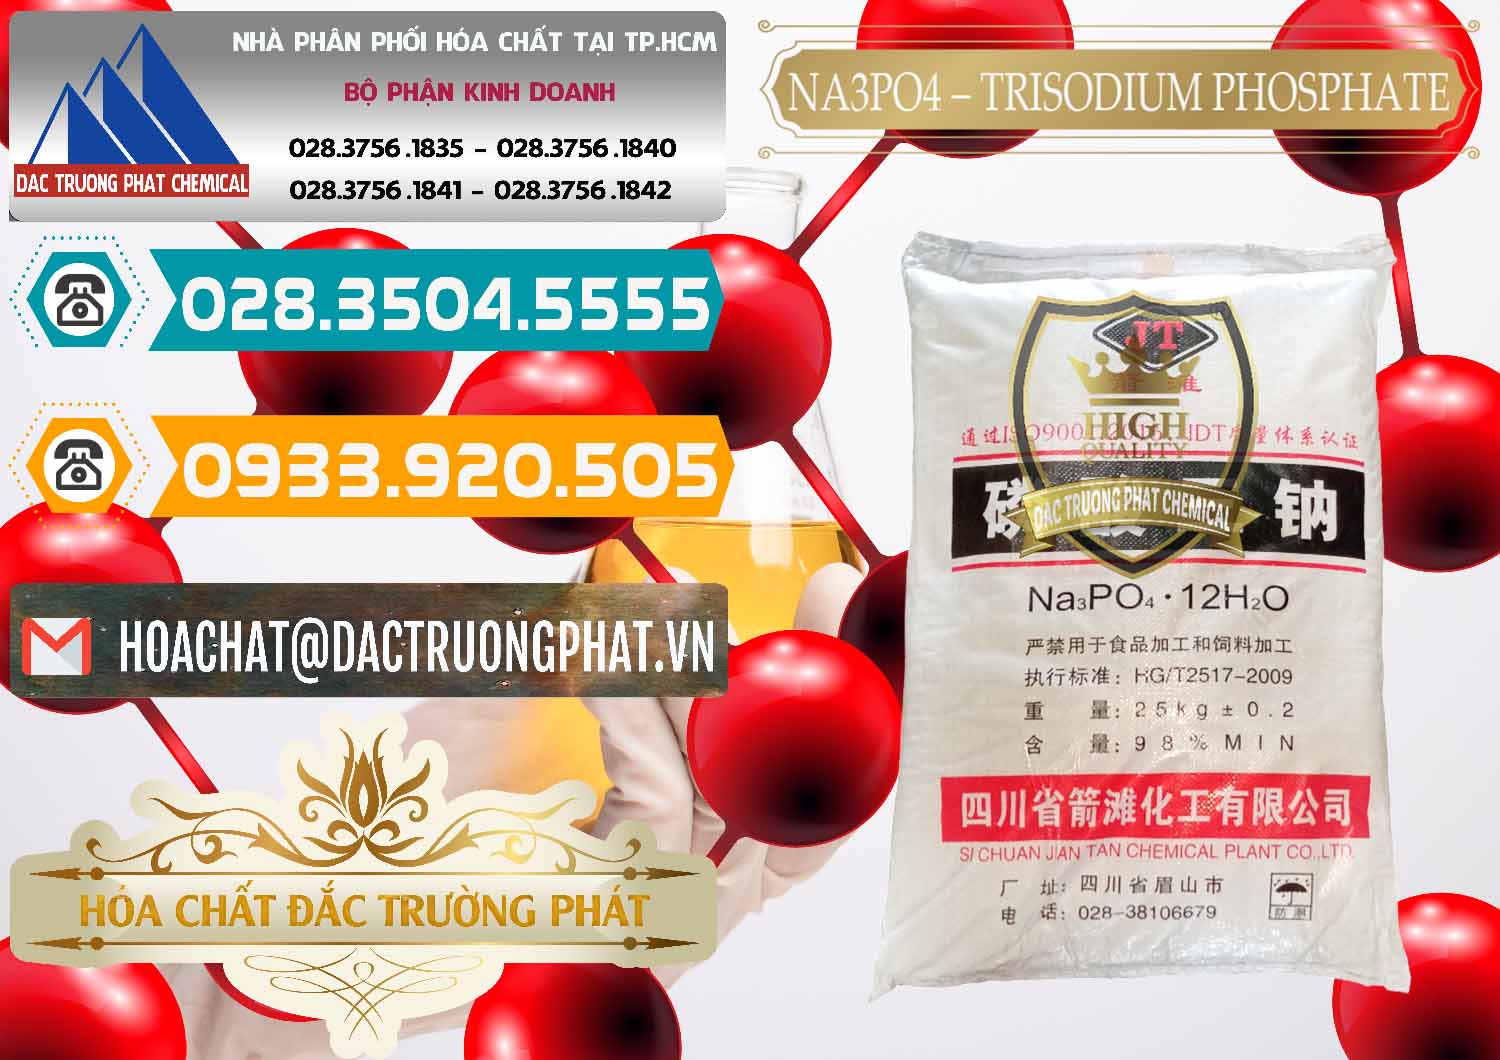 Cty kinh doanh & bán Na3PO4 – Trisodium Phosphate Trung Quốc China JT - 0102 - Đơn vị cung cấp & bán hóa chất tại TP.HCM - congtyhoachat.vn